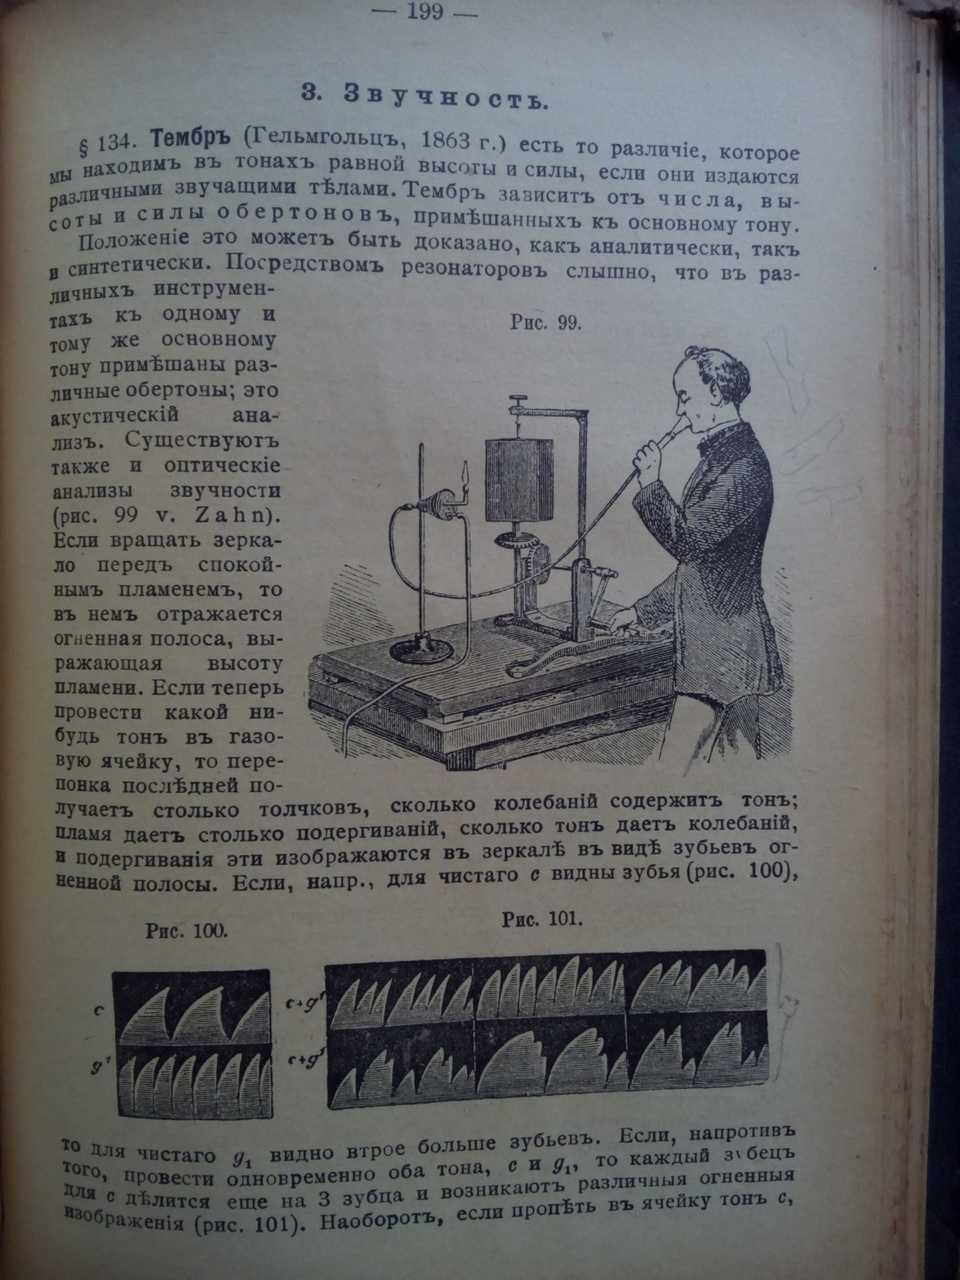 Физика метеорология география 1902г. С 160 рисунками!